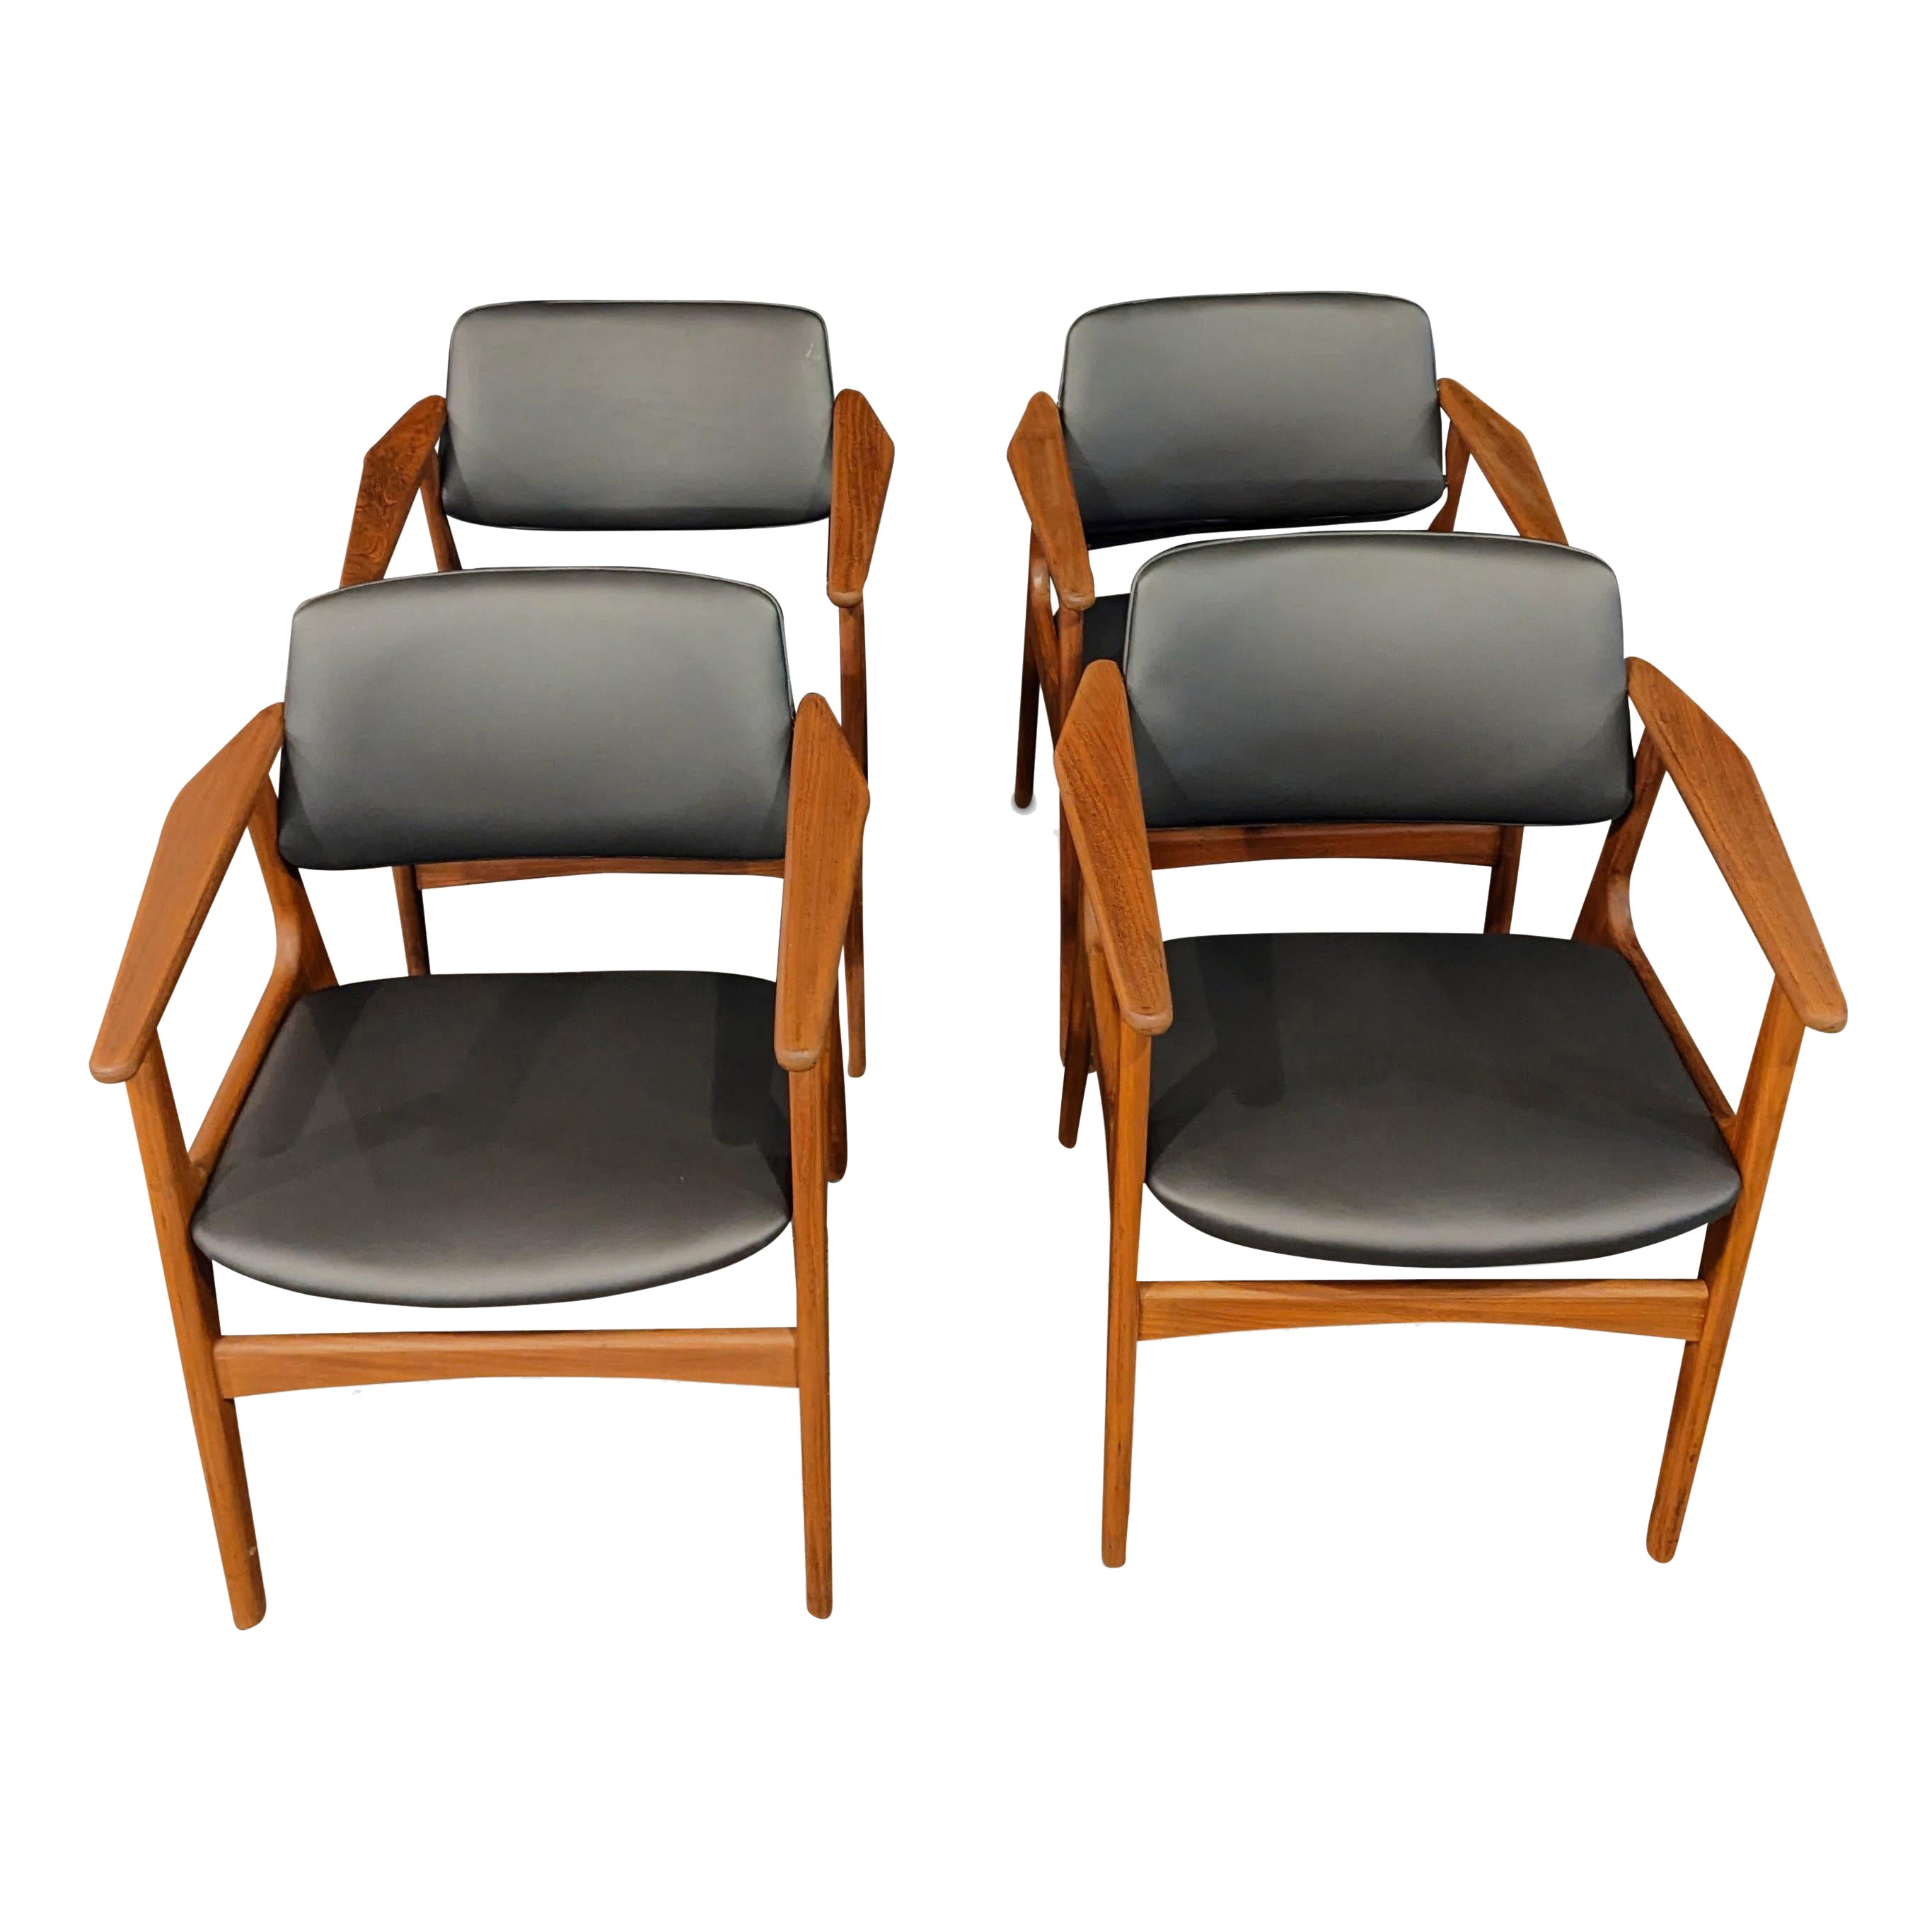 4 Arne Vodder Teak Arm Chairs - 072312 Vintage Danish Mid Century